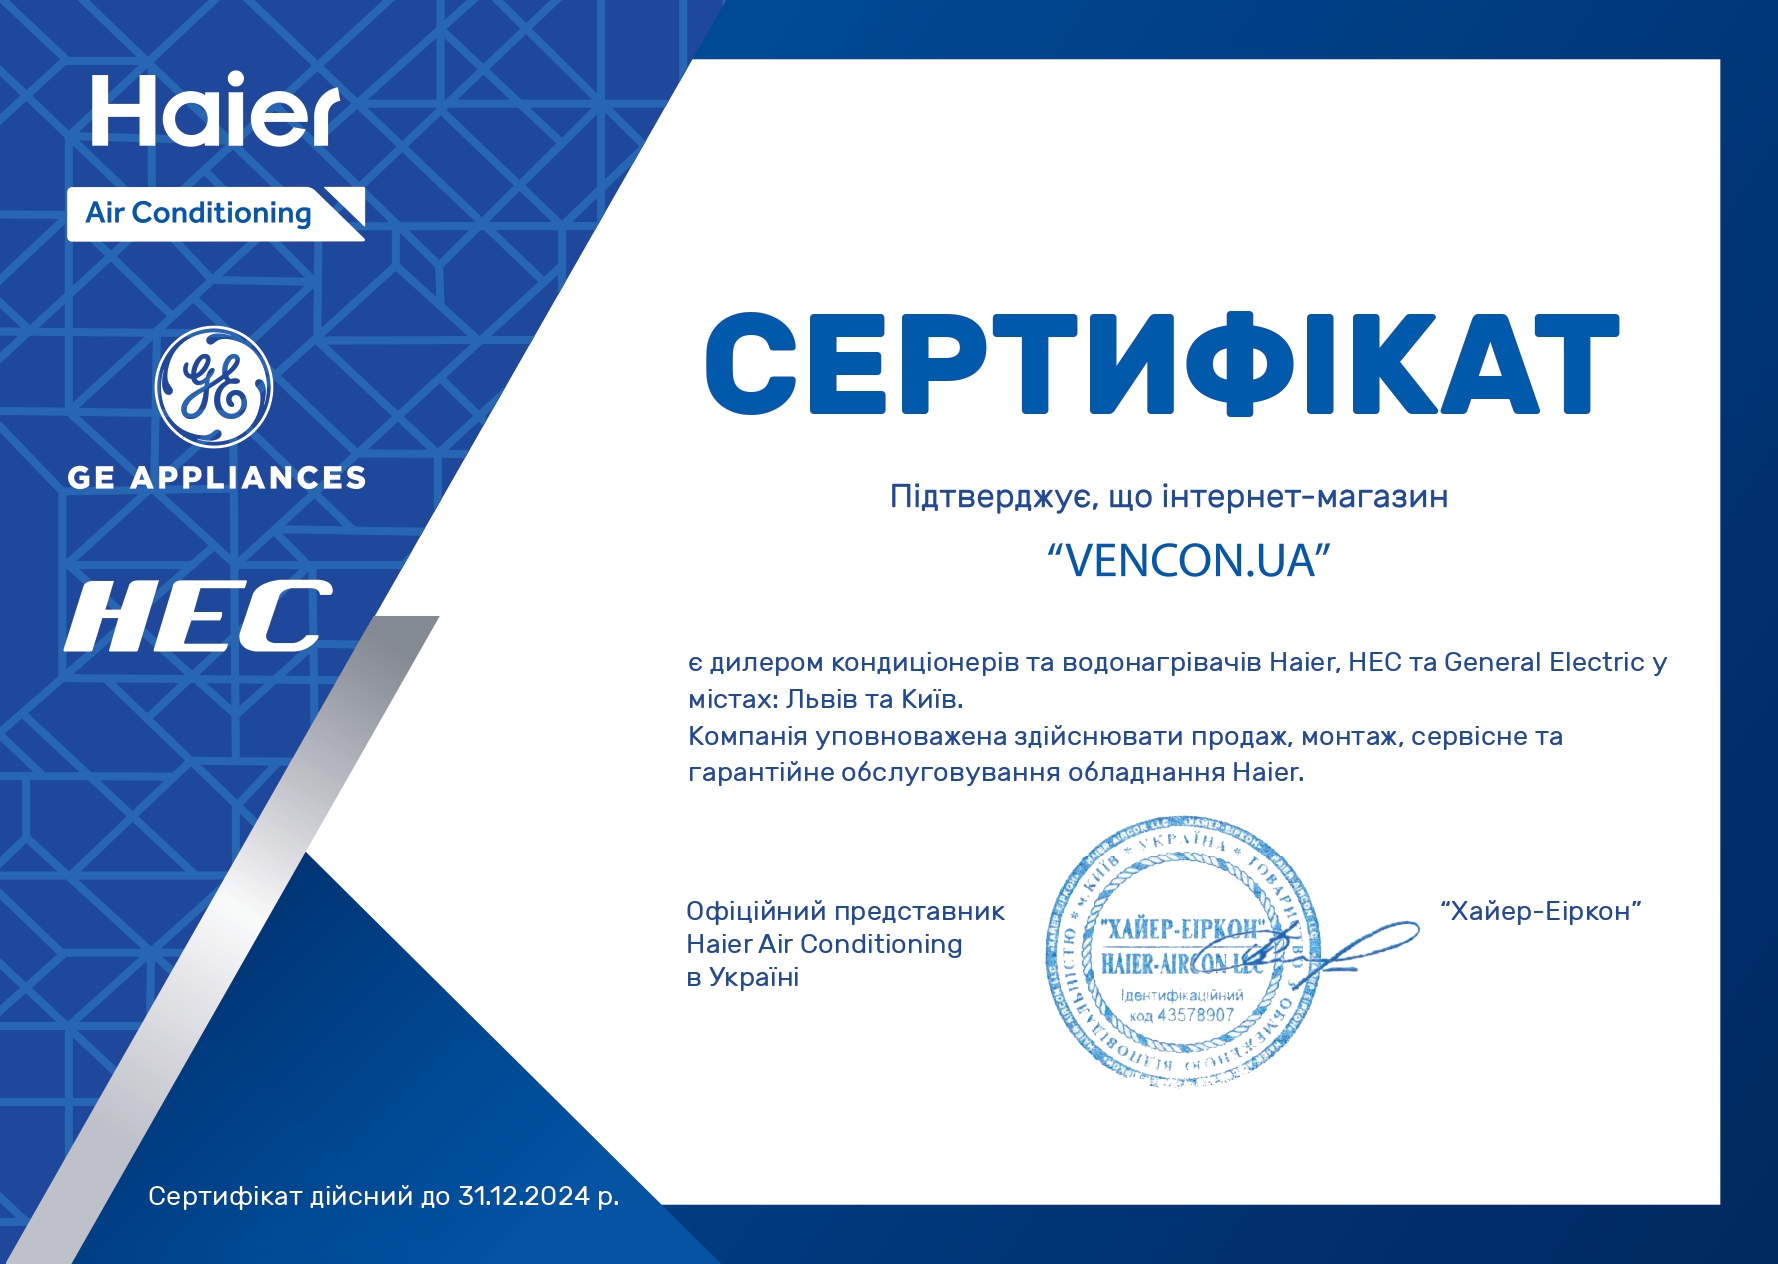 Кондиционеры Haier 12 тыс. BTU - сертификат официального продавца Haier